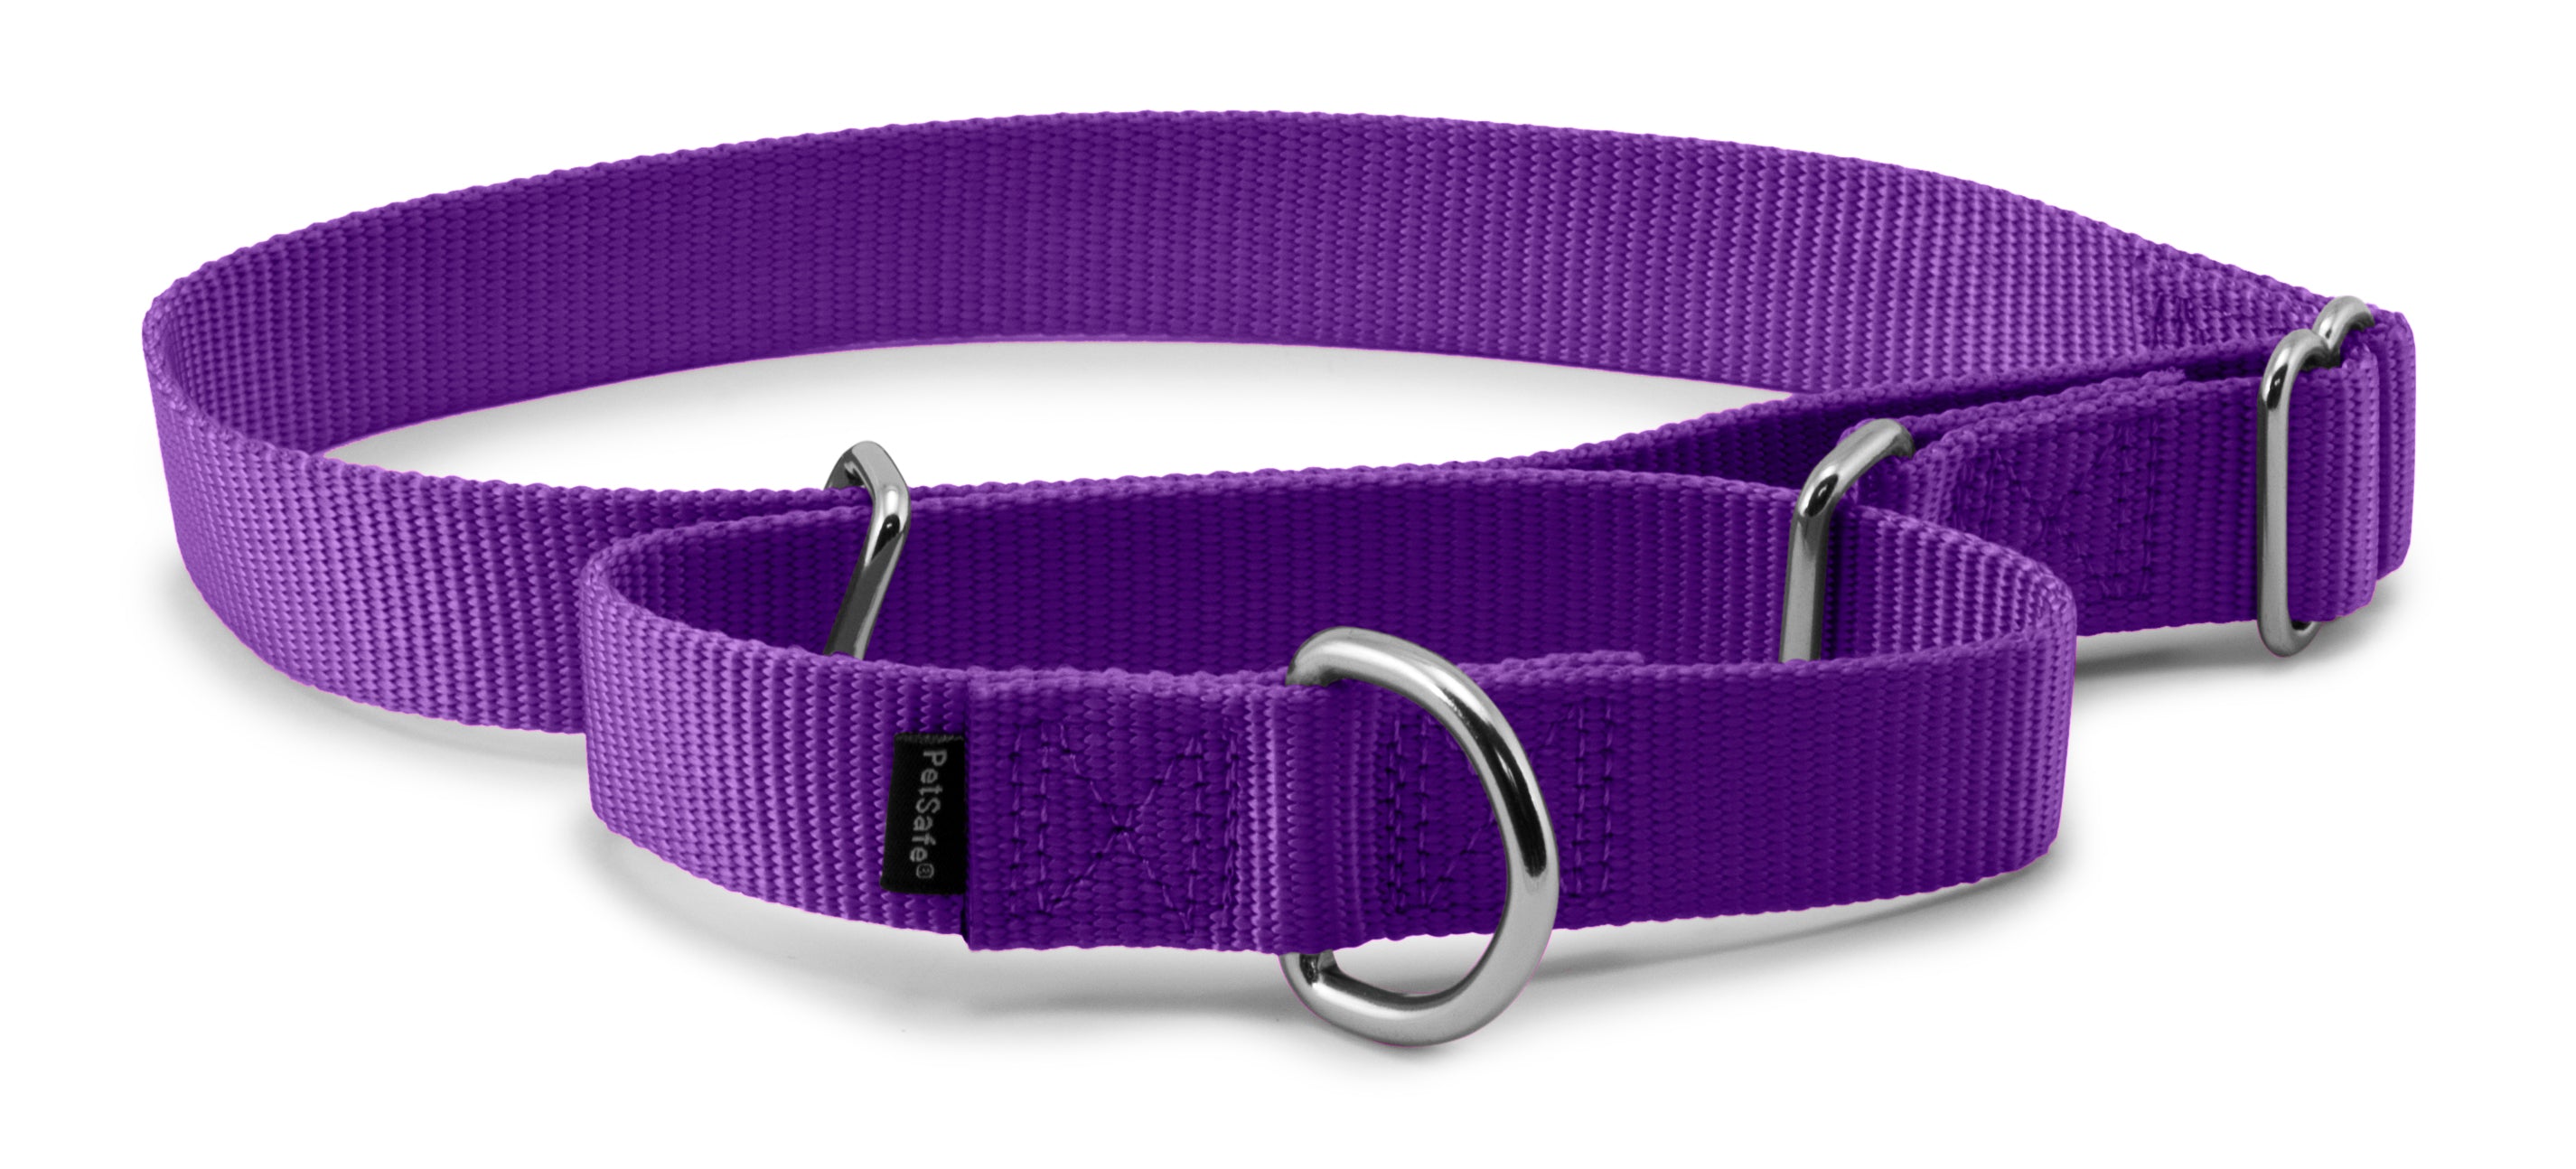 Martingale Premier Collar de PetSafe en color Purpura